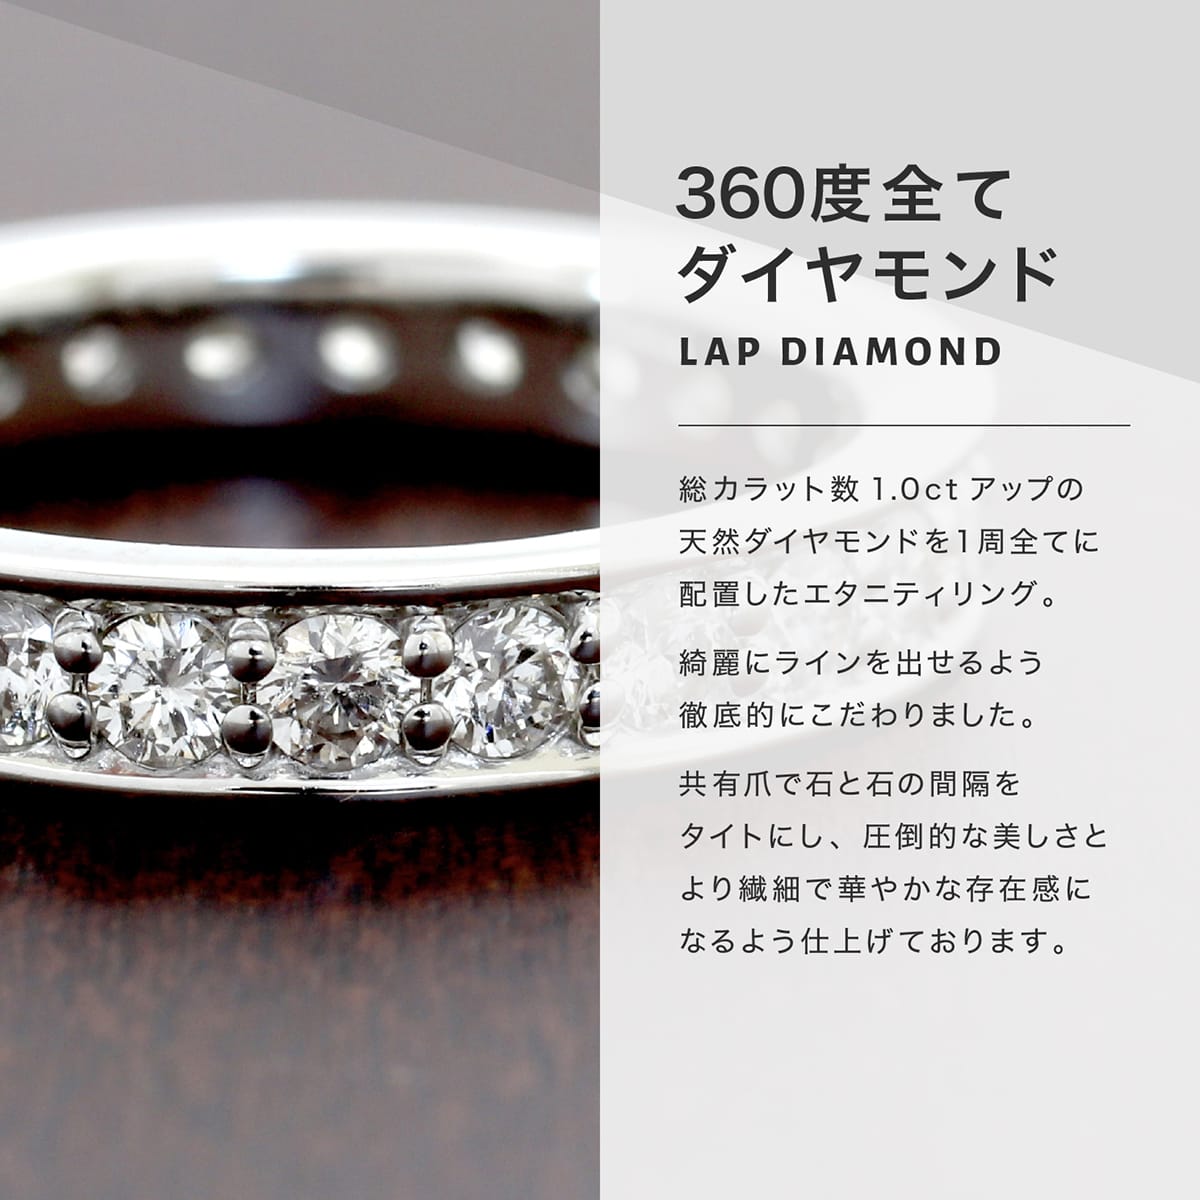 ボタニカル ミディアムベール エタニティ リング ダイヤモンド k10